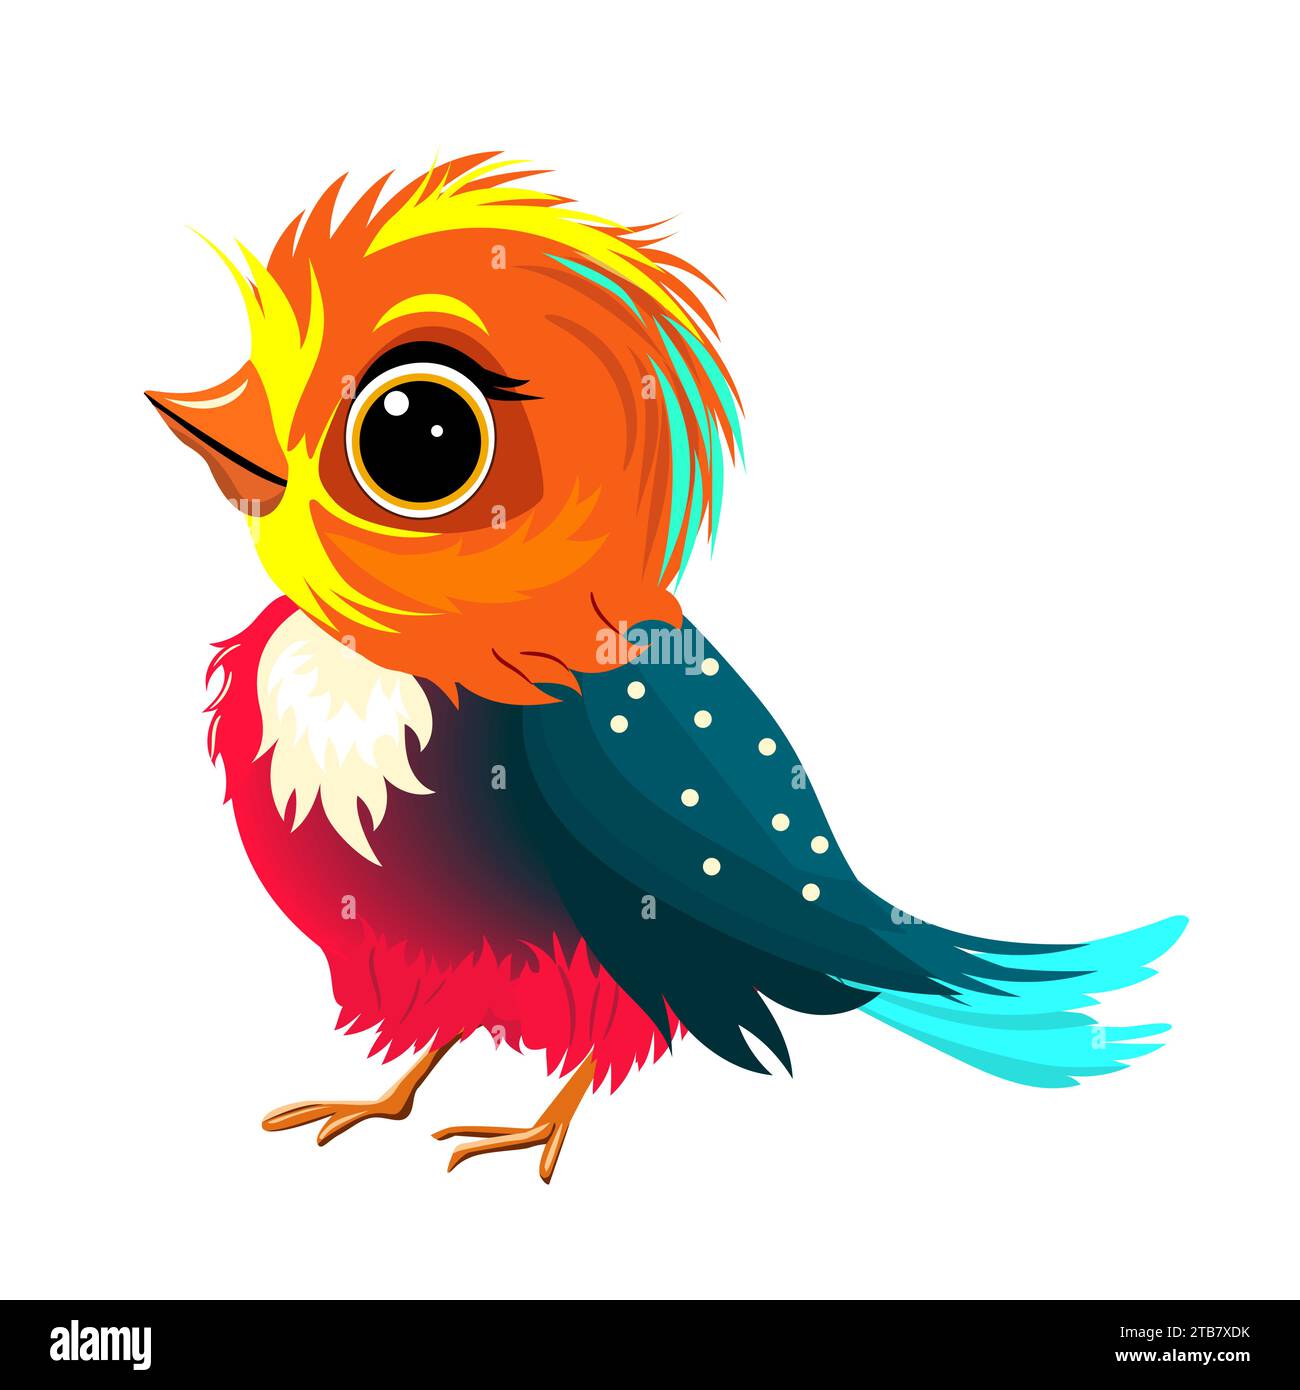 Piccolo uccellino, dipinto con colori brillanti, con piumaggio multicolore, su sfondo bianco. Illustrazione Vettoriale